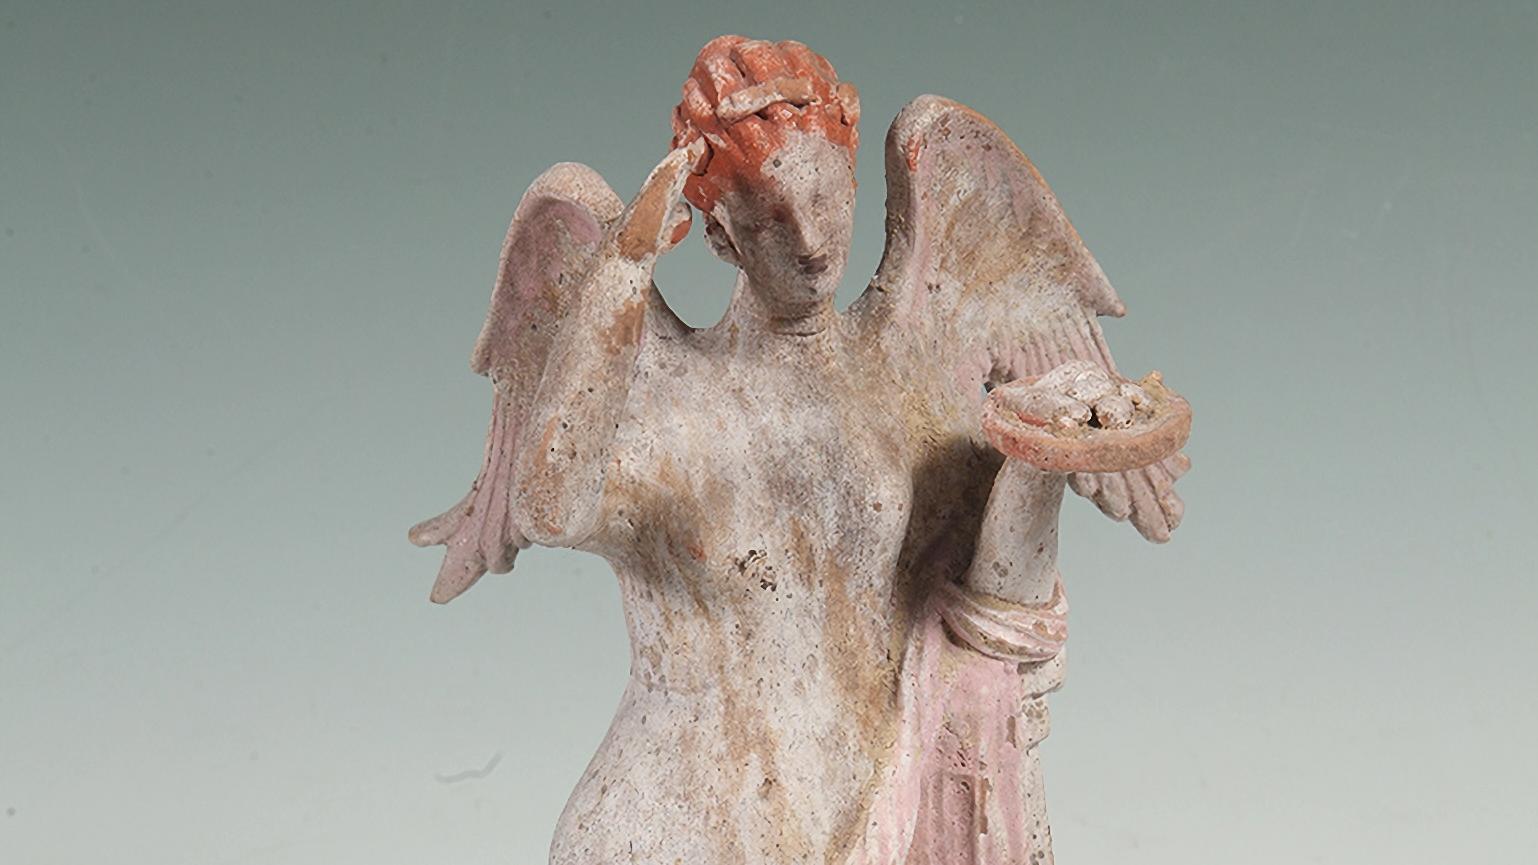 Fotografía de estatuilla antigua representando una figura alada